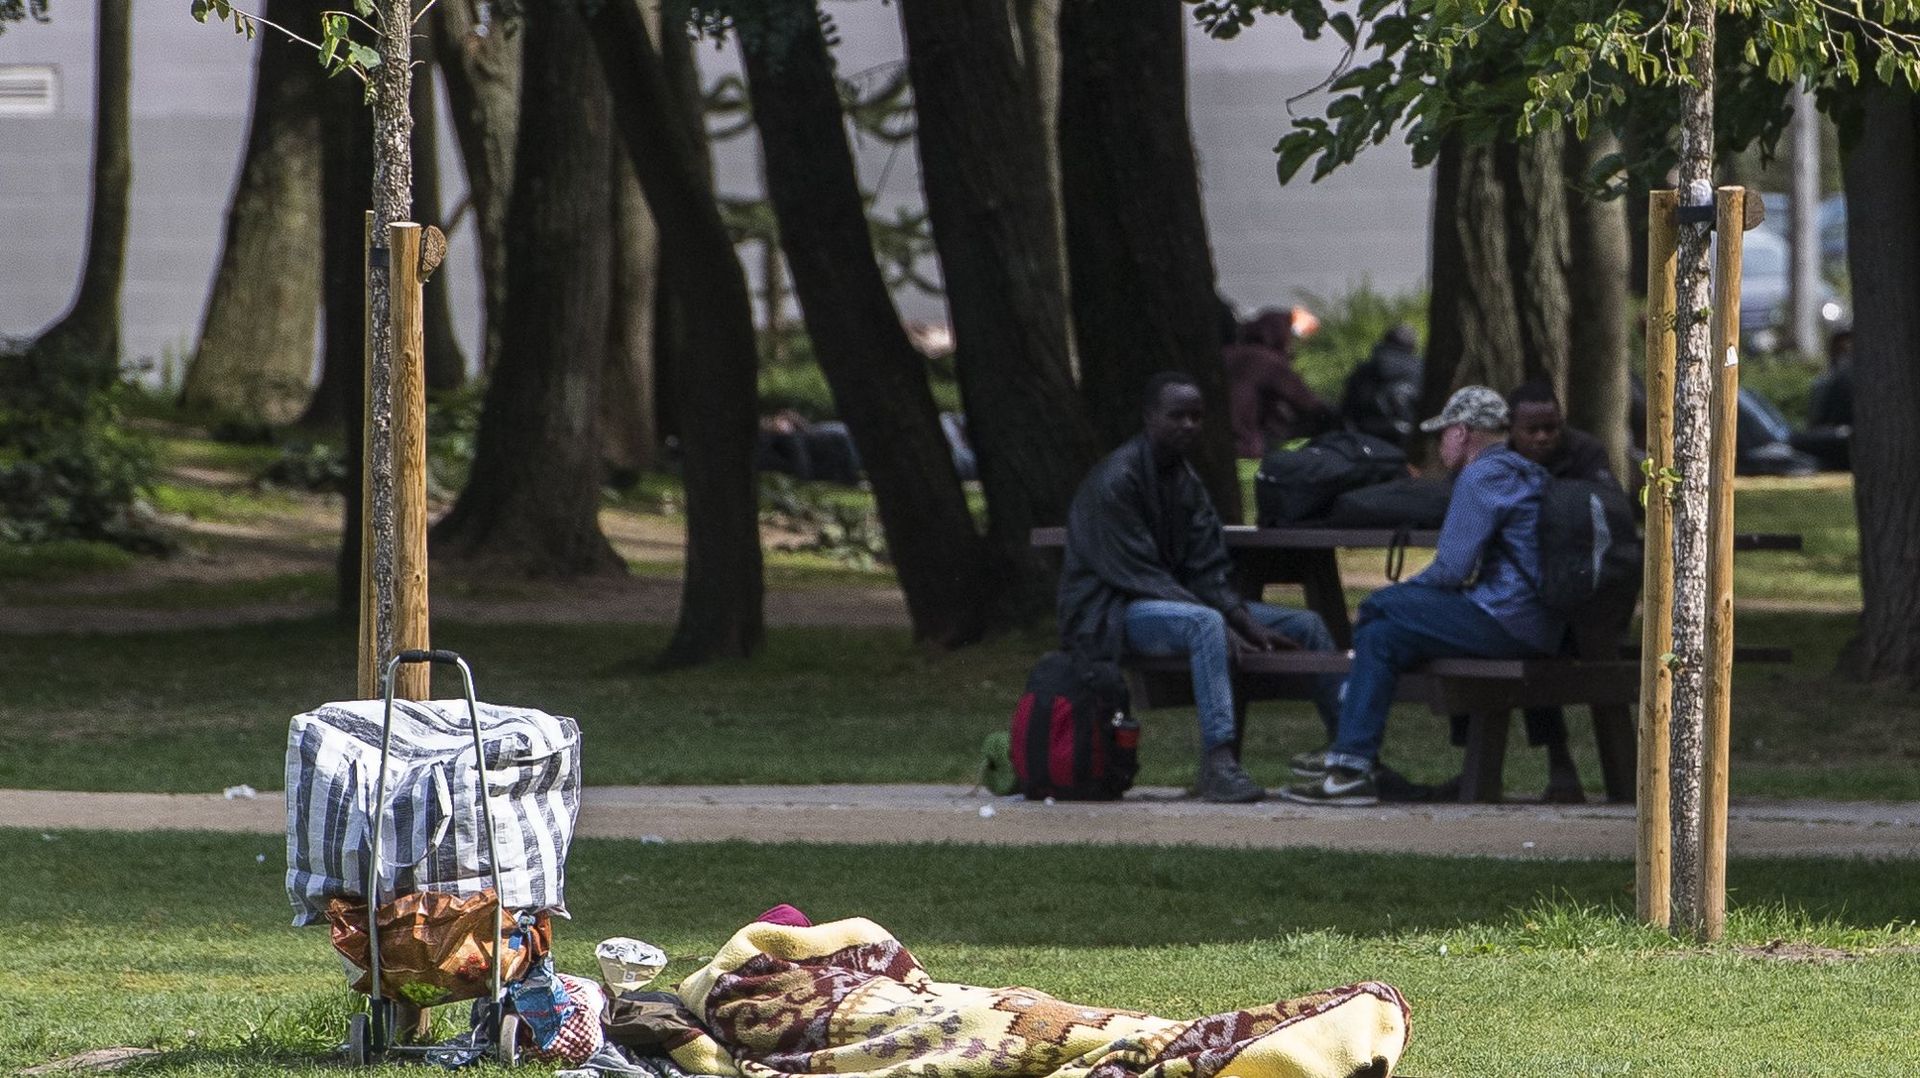 Le gouvernement bruxellois n'a toujours pas tranché dans la problématique de l'accueil des migrants du parc Maximilien.